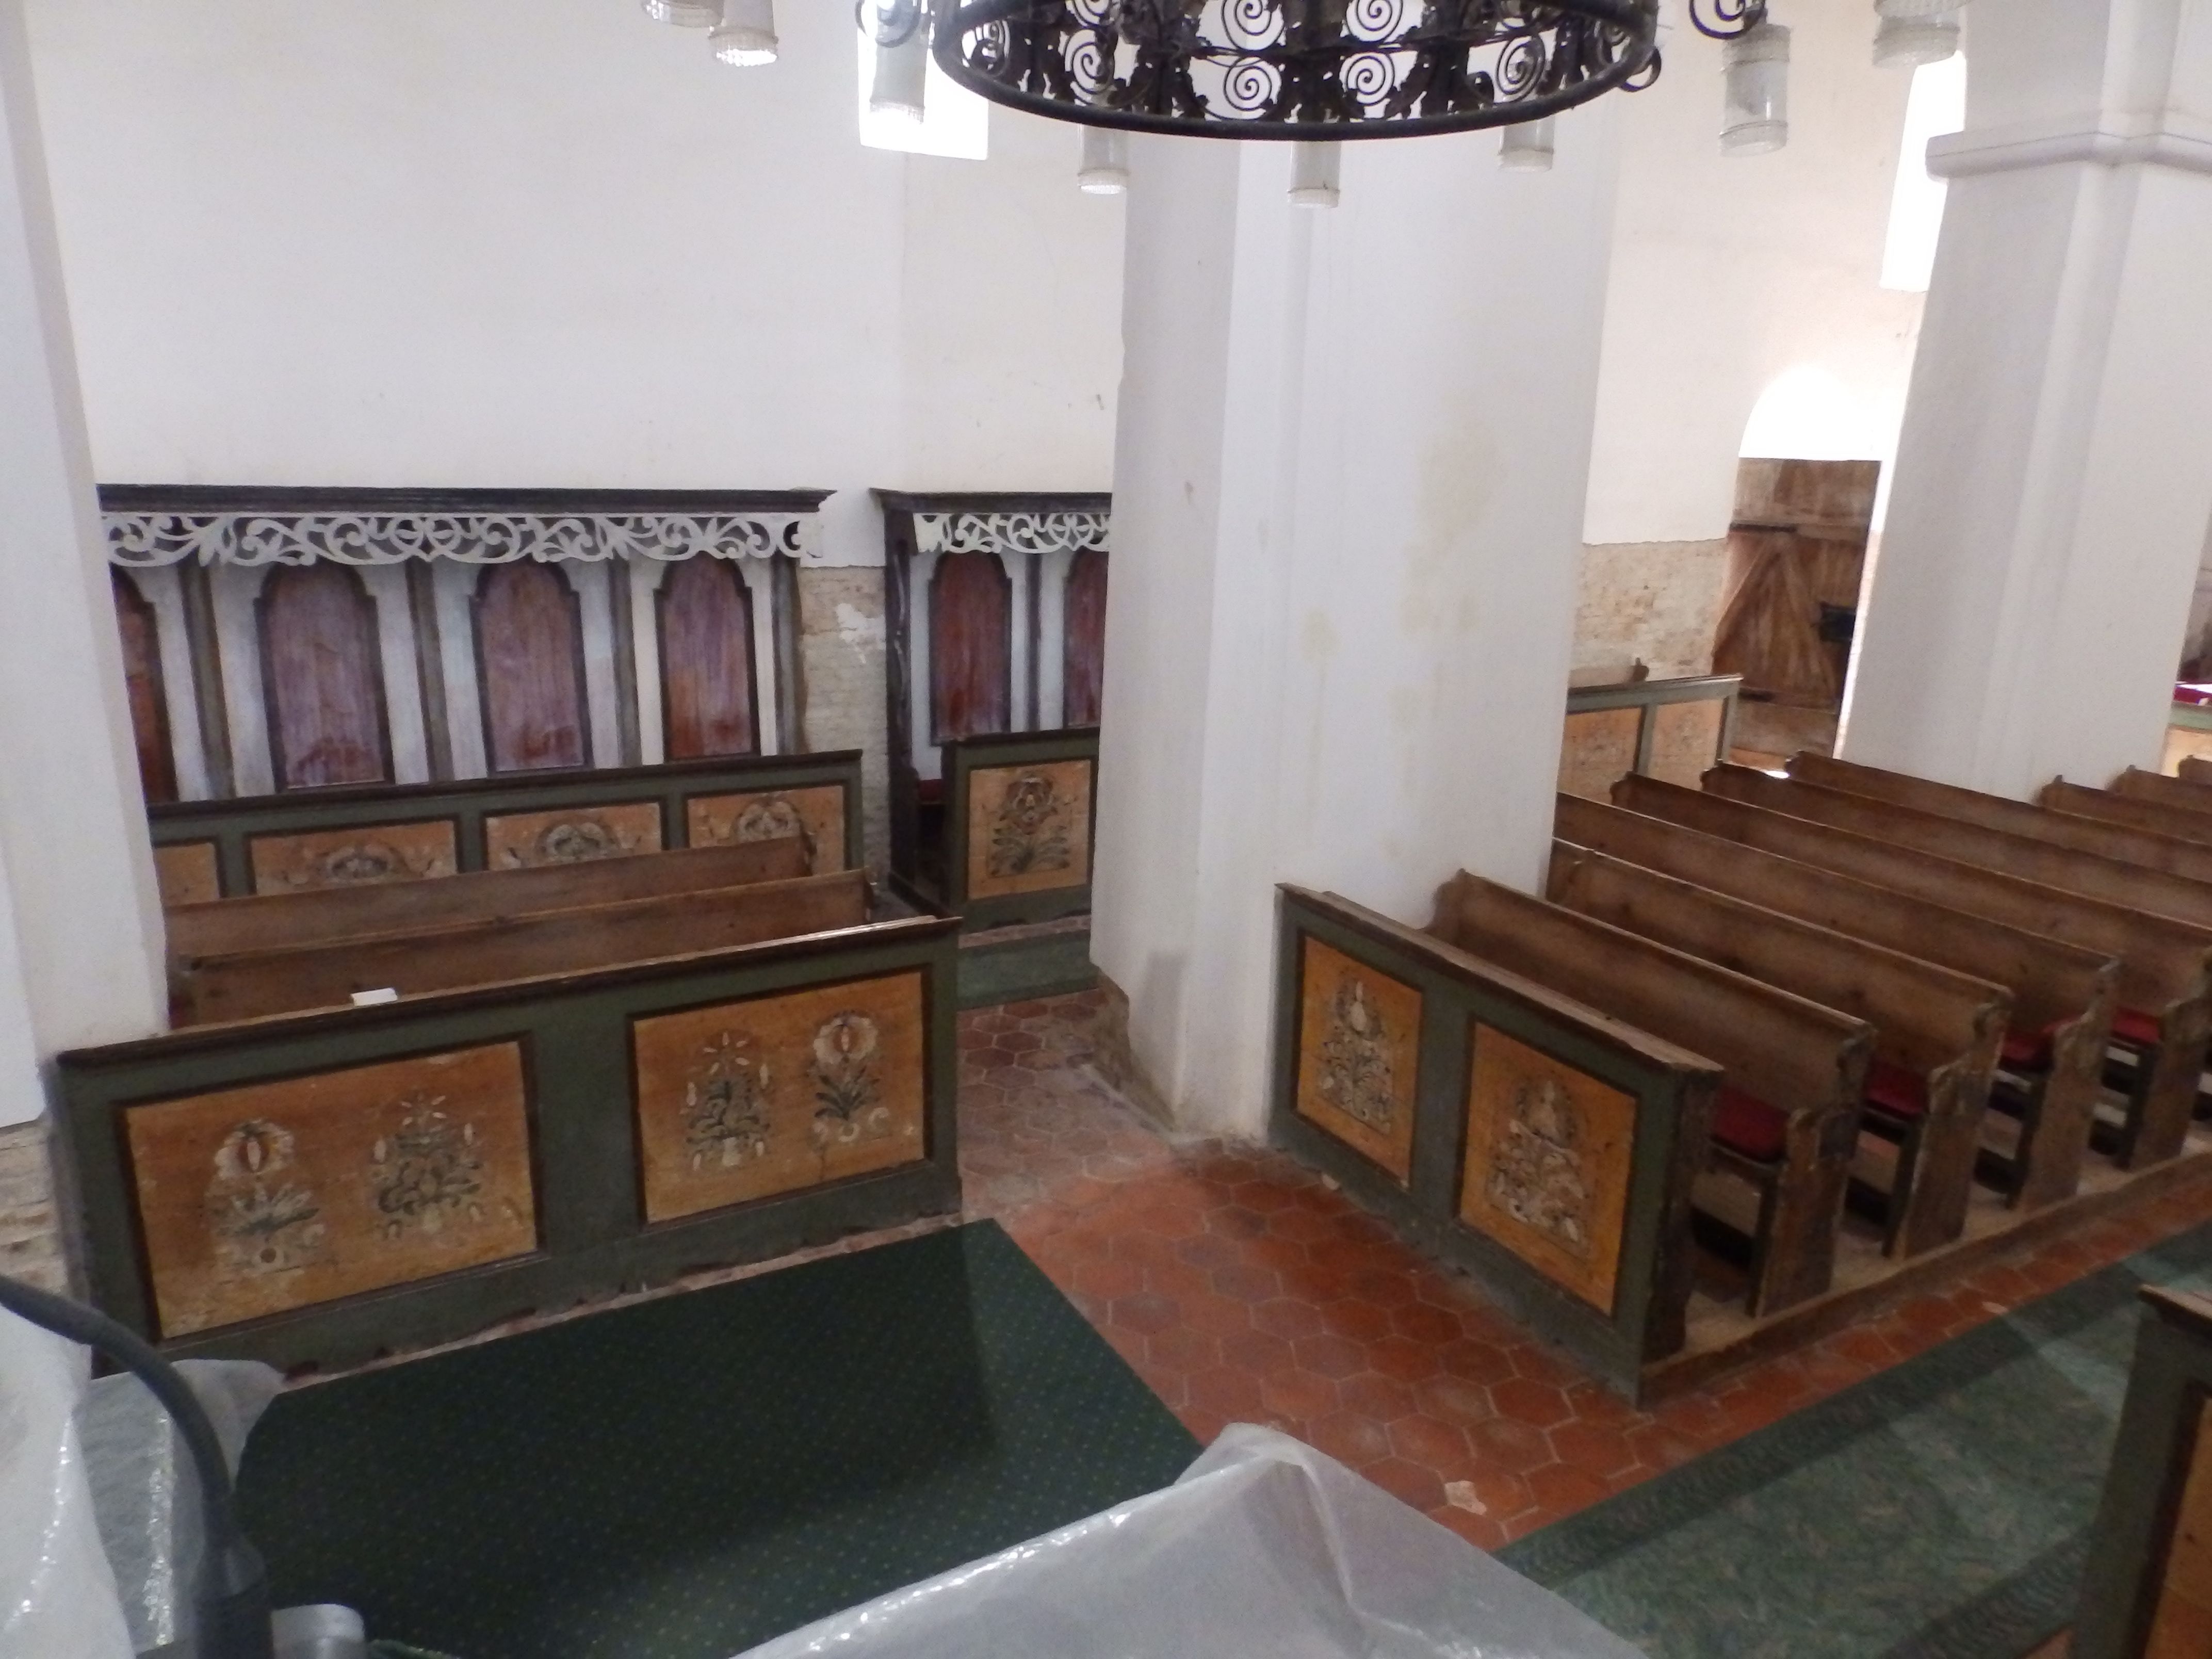  Az ákosi református templom virágmintás fapadjai